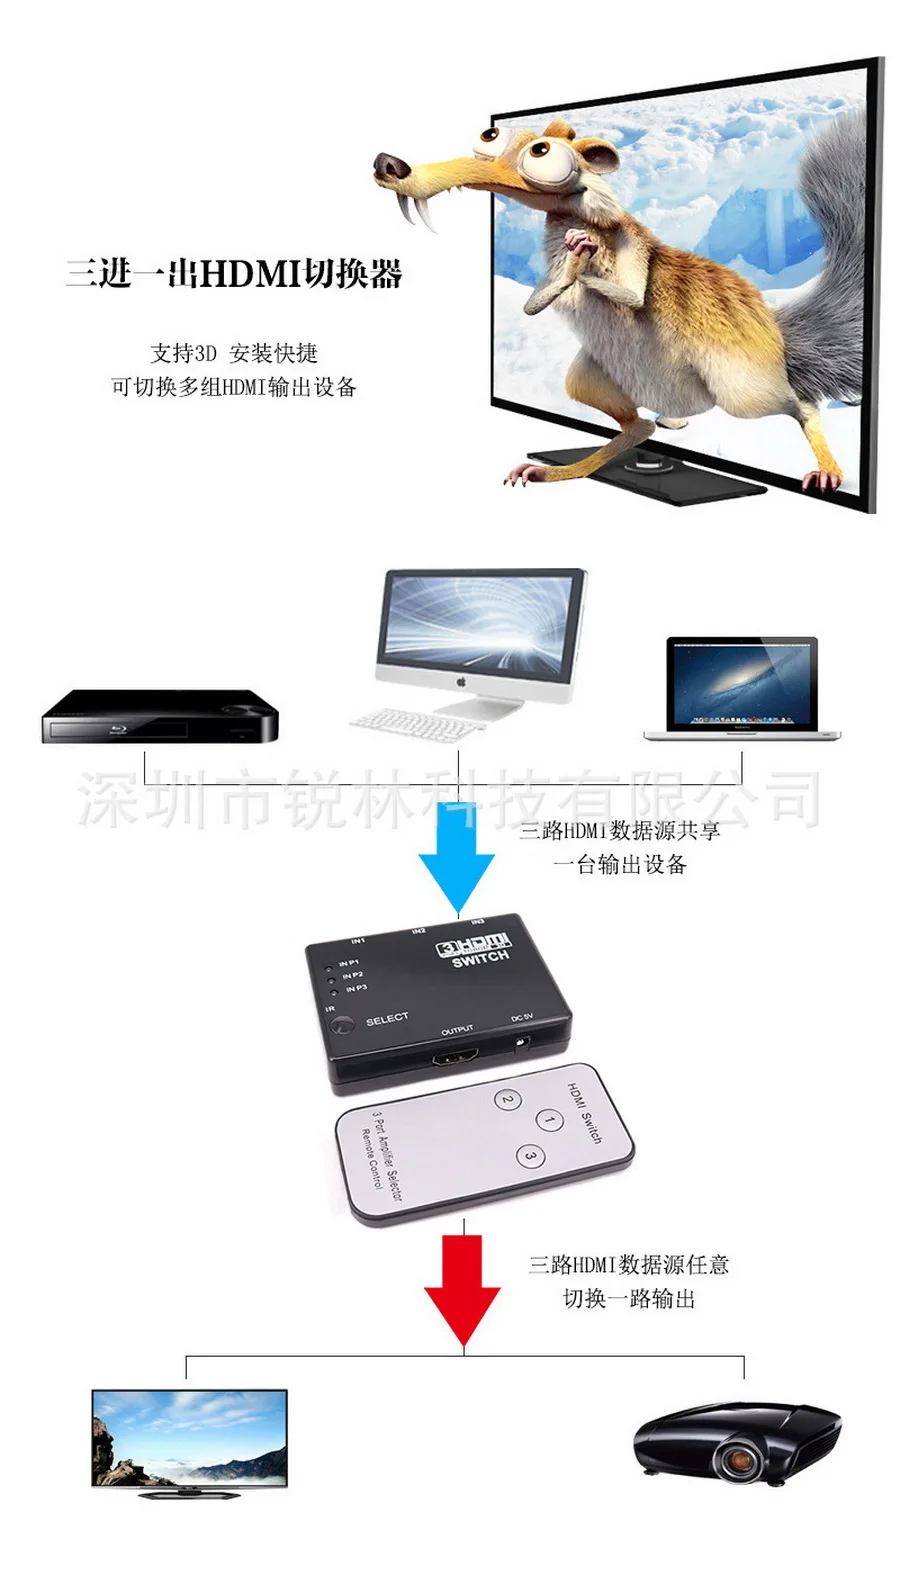 50 шт. 3 Порты и разъёмы 1080 P HDMI видеоразветвитель HDMI коммутатор, переключатель ИК-пульт дистанционного управления для HDTV PS3 DVD